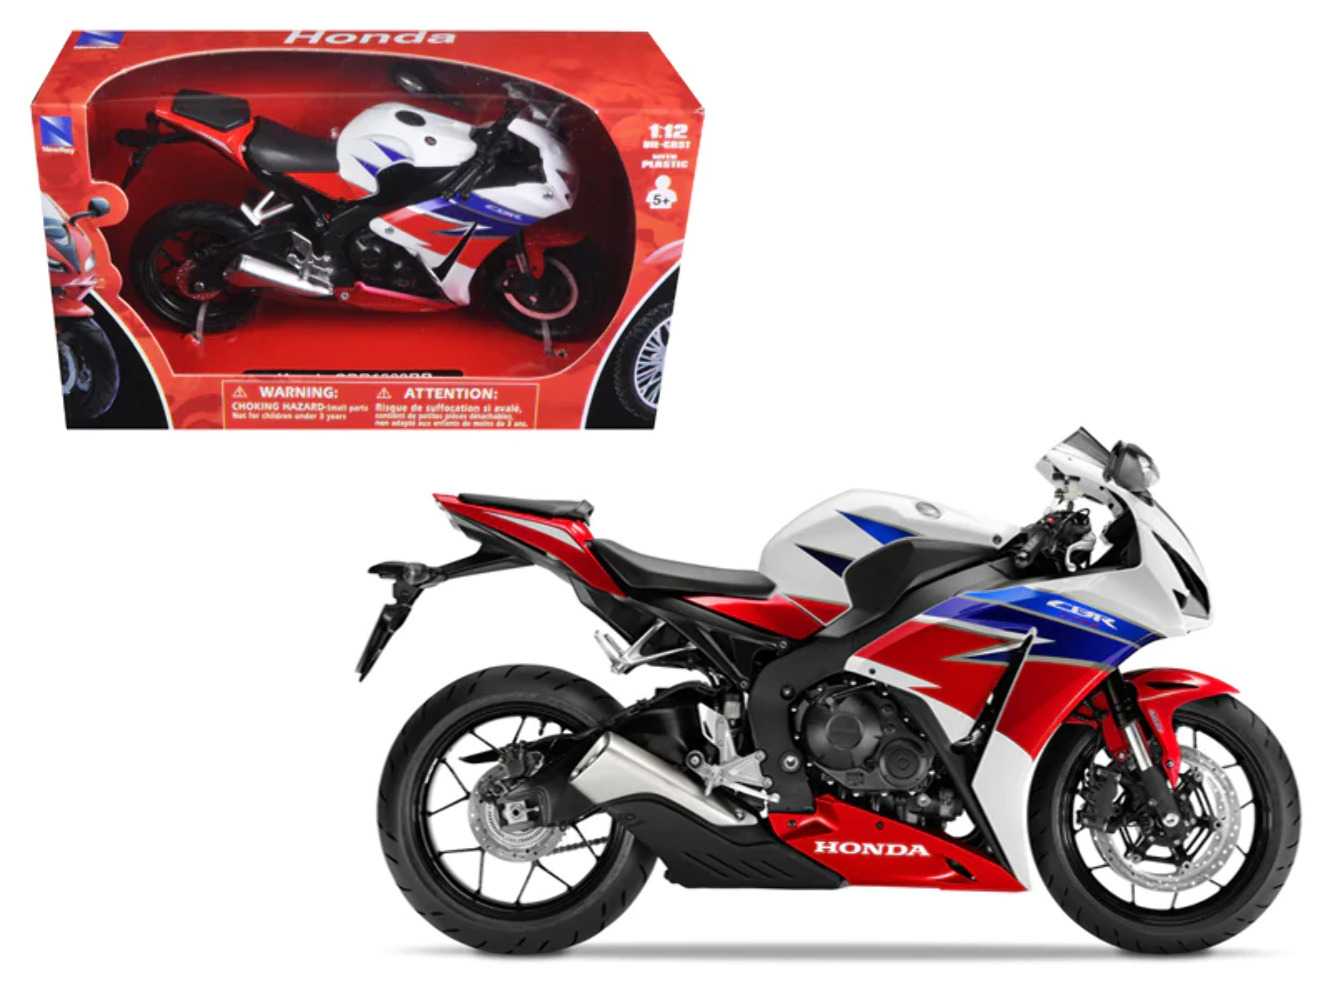 2016 Honda CBR100RR Red/White/Blue/Black Motorcycle Model 1/12